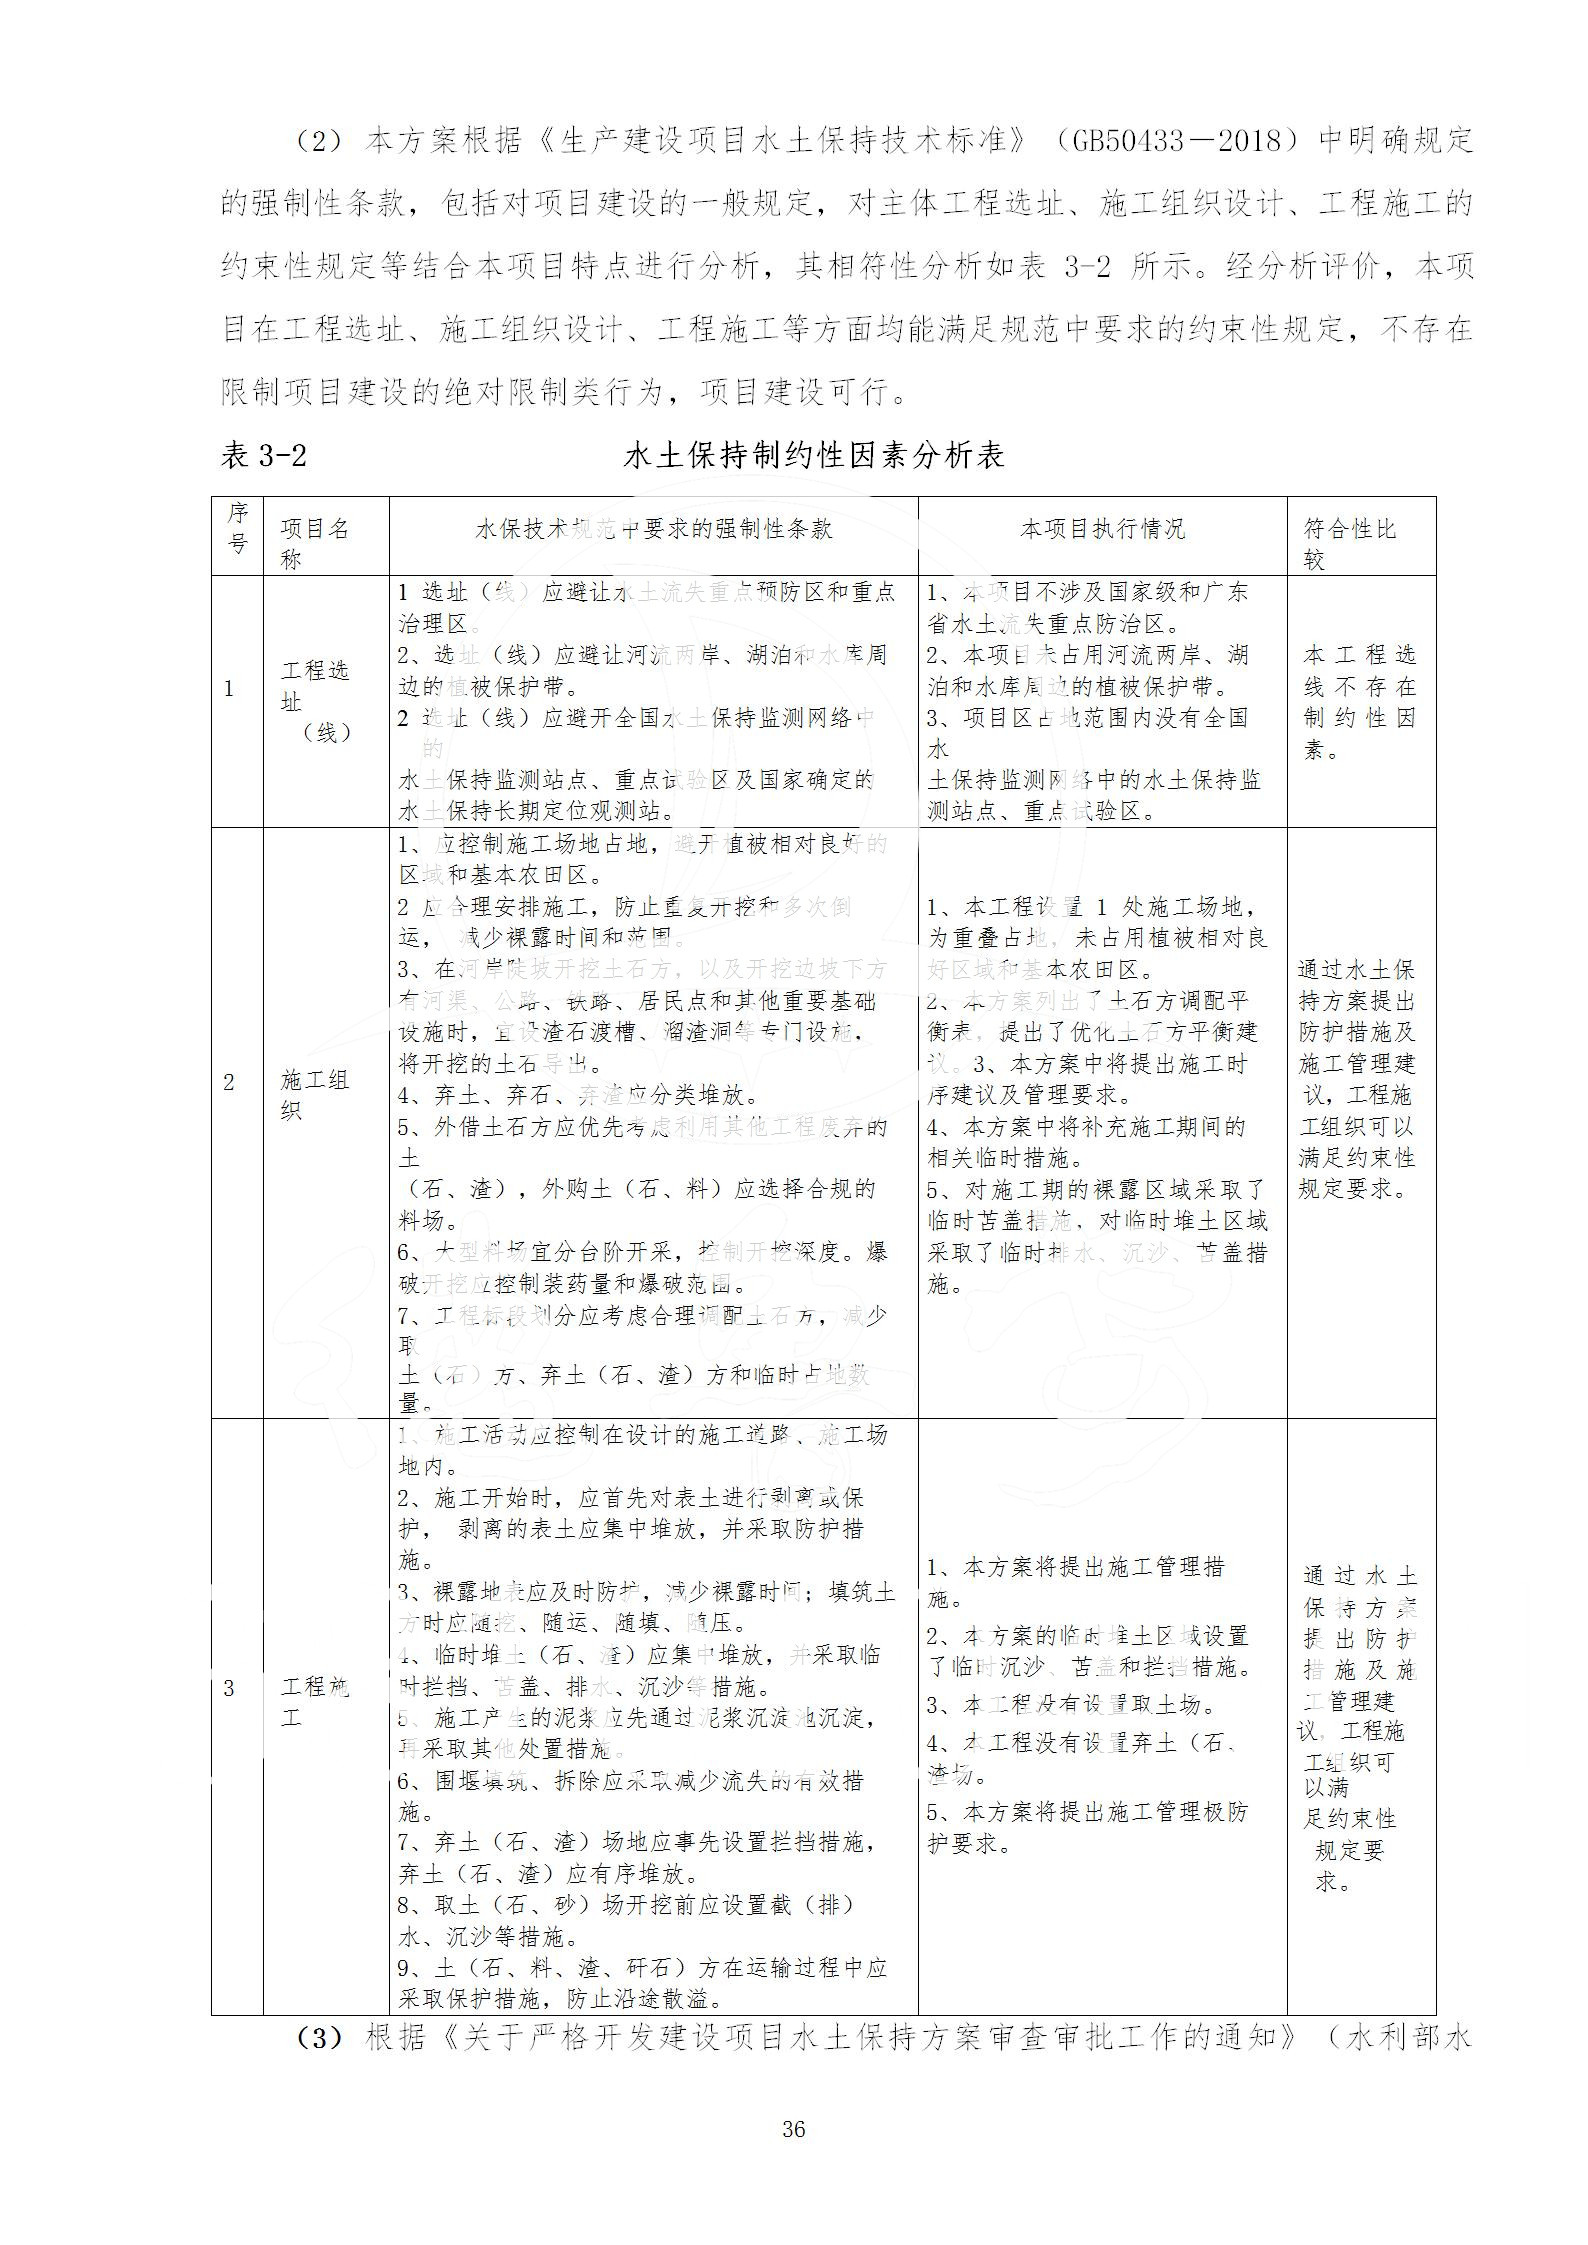 广东省大圣寺水土保持报告  修改稿5_36.jpg